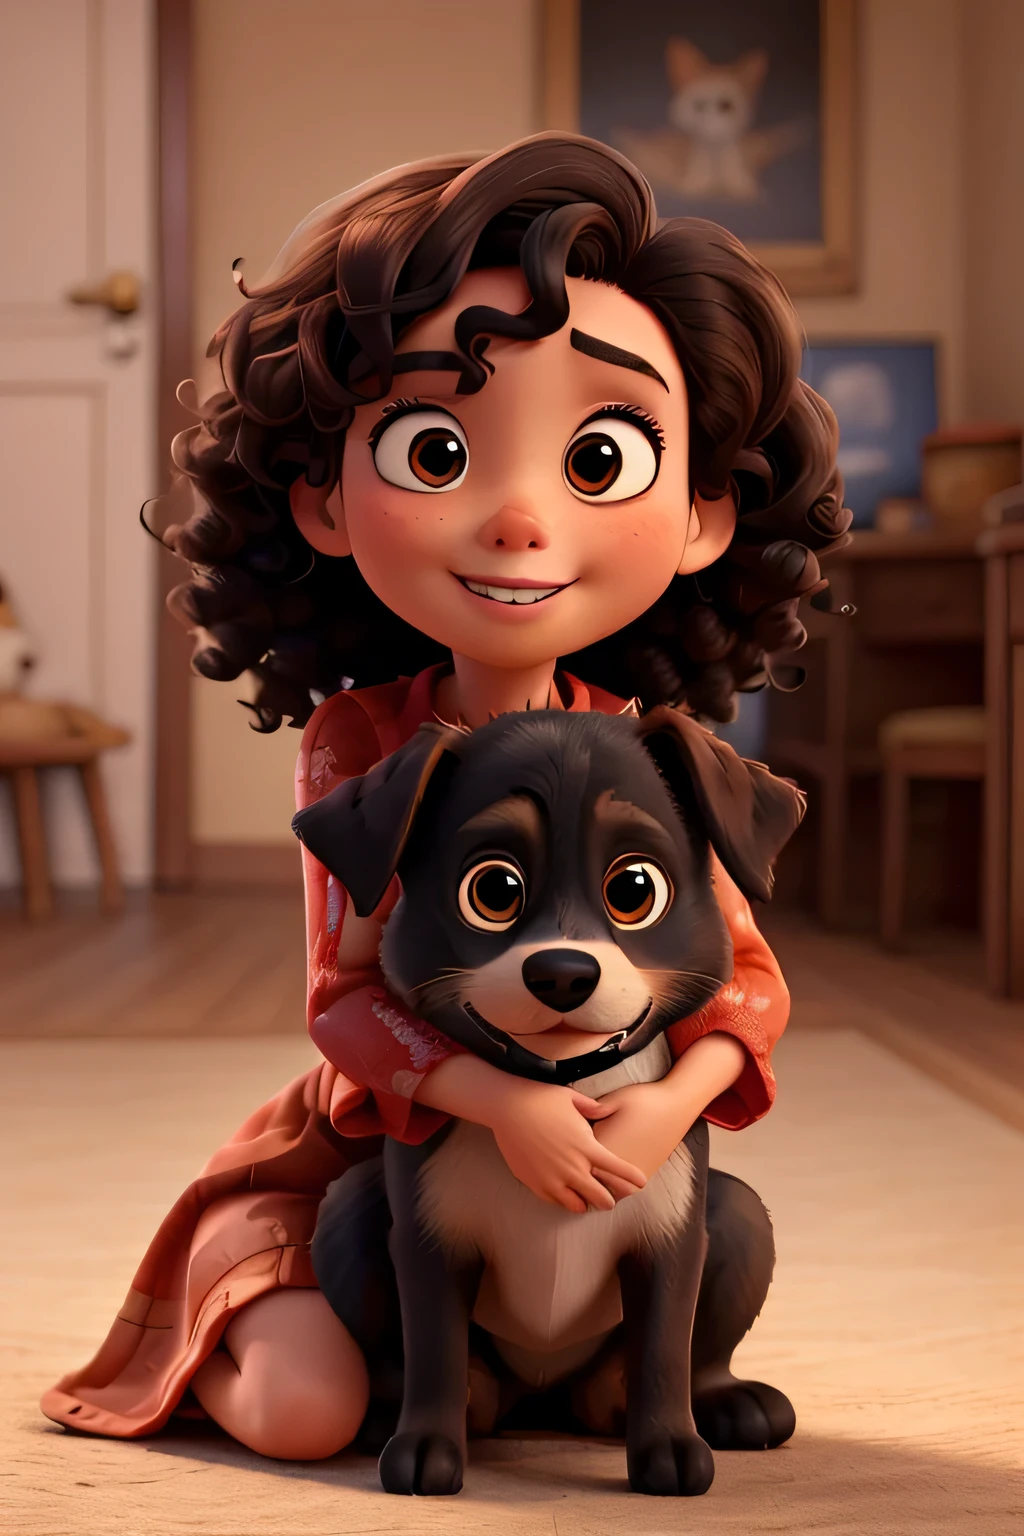 a . uno con pelo negro rizado, Piel de color marron claro, y ojos marrones oscuros. Ella está vestida con un hermoso vestido rojo y abraza cálidamente a un perro.. La escena debe tener el estilo artístico digital distintivo de Pixar..
